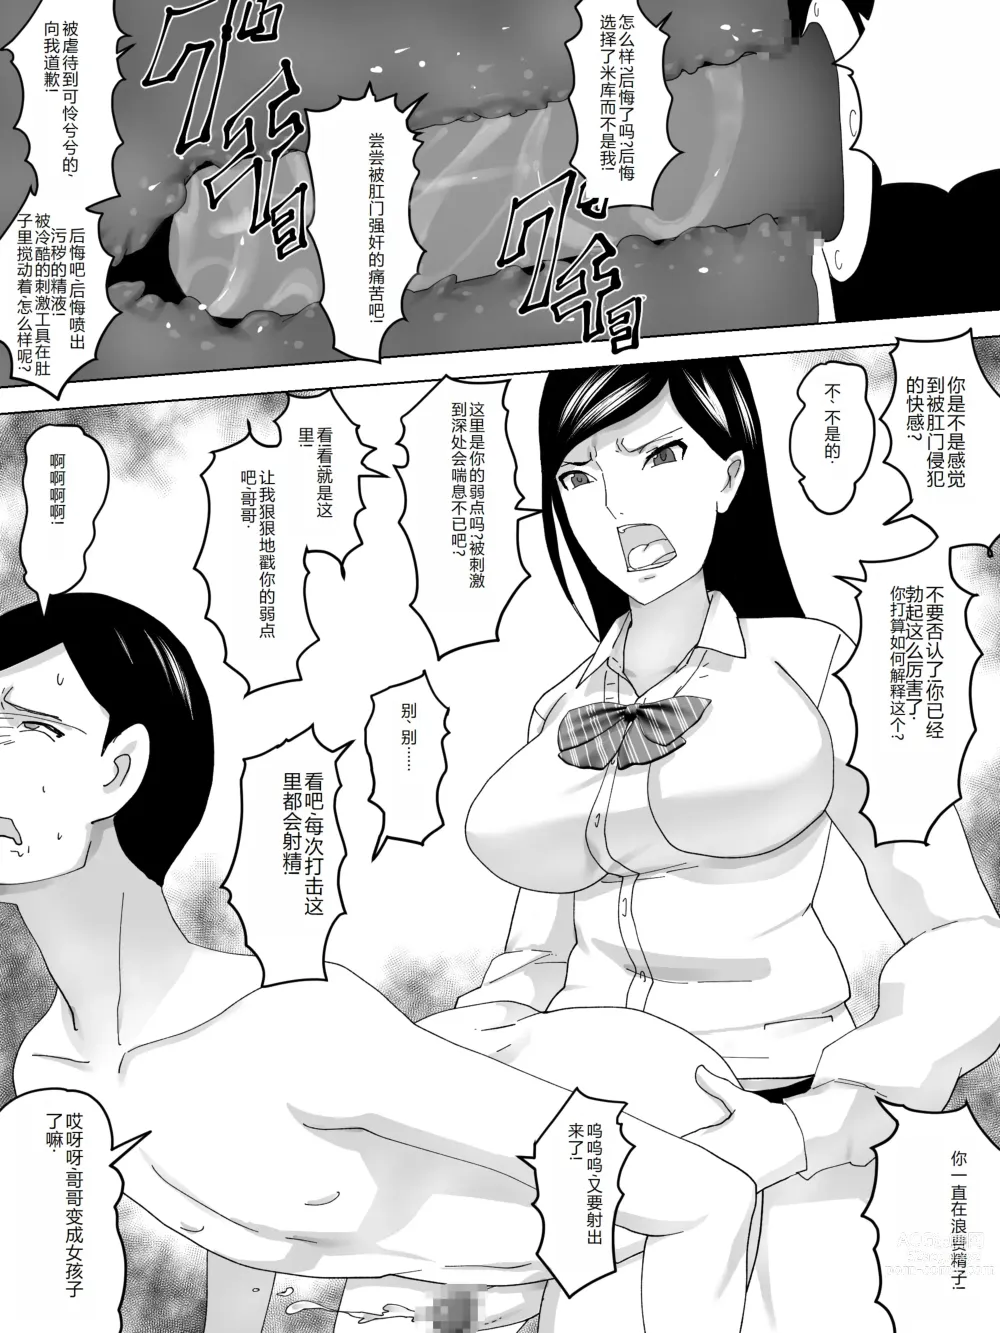 Page 16 of doujinshi Imouto No Benki ni Naru